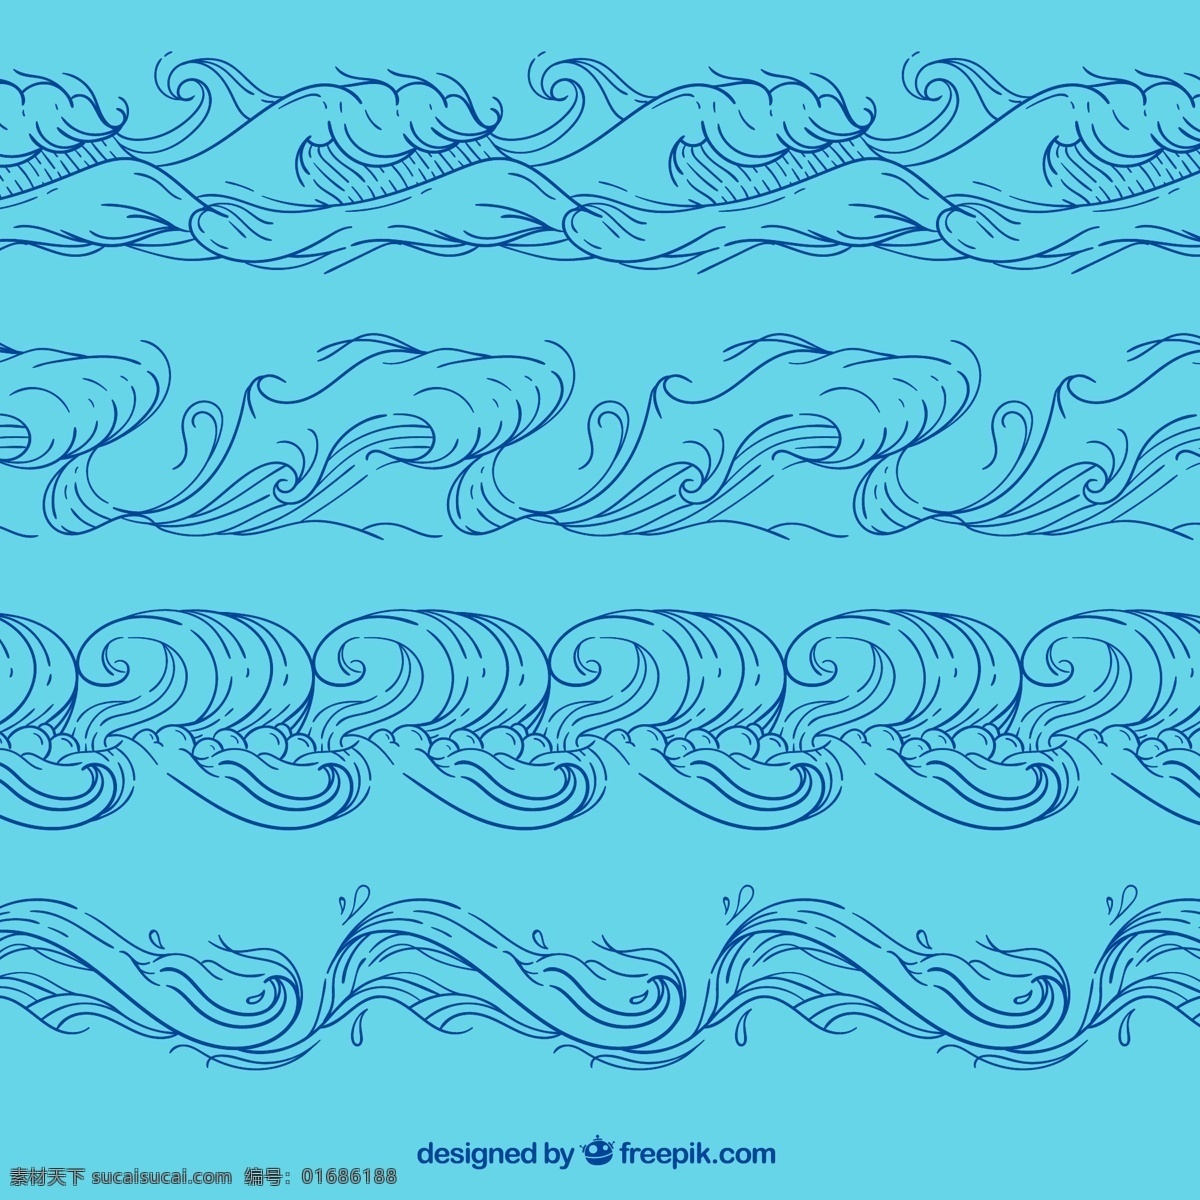 手绘海浪设计 浪花 手绘 海浪 大海 花纹 底纹边框 背景底纹